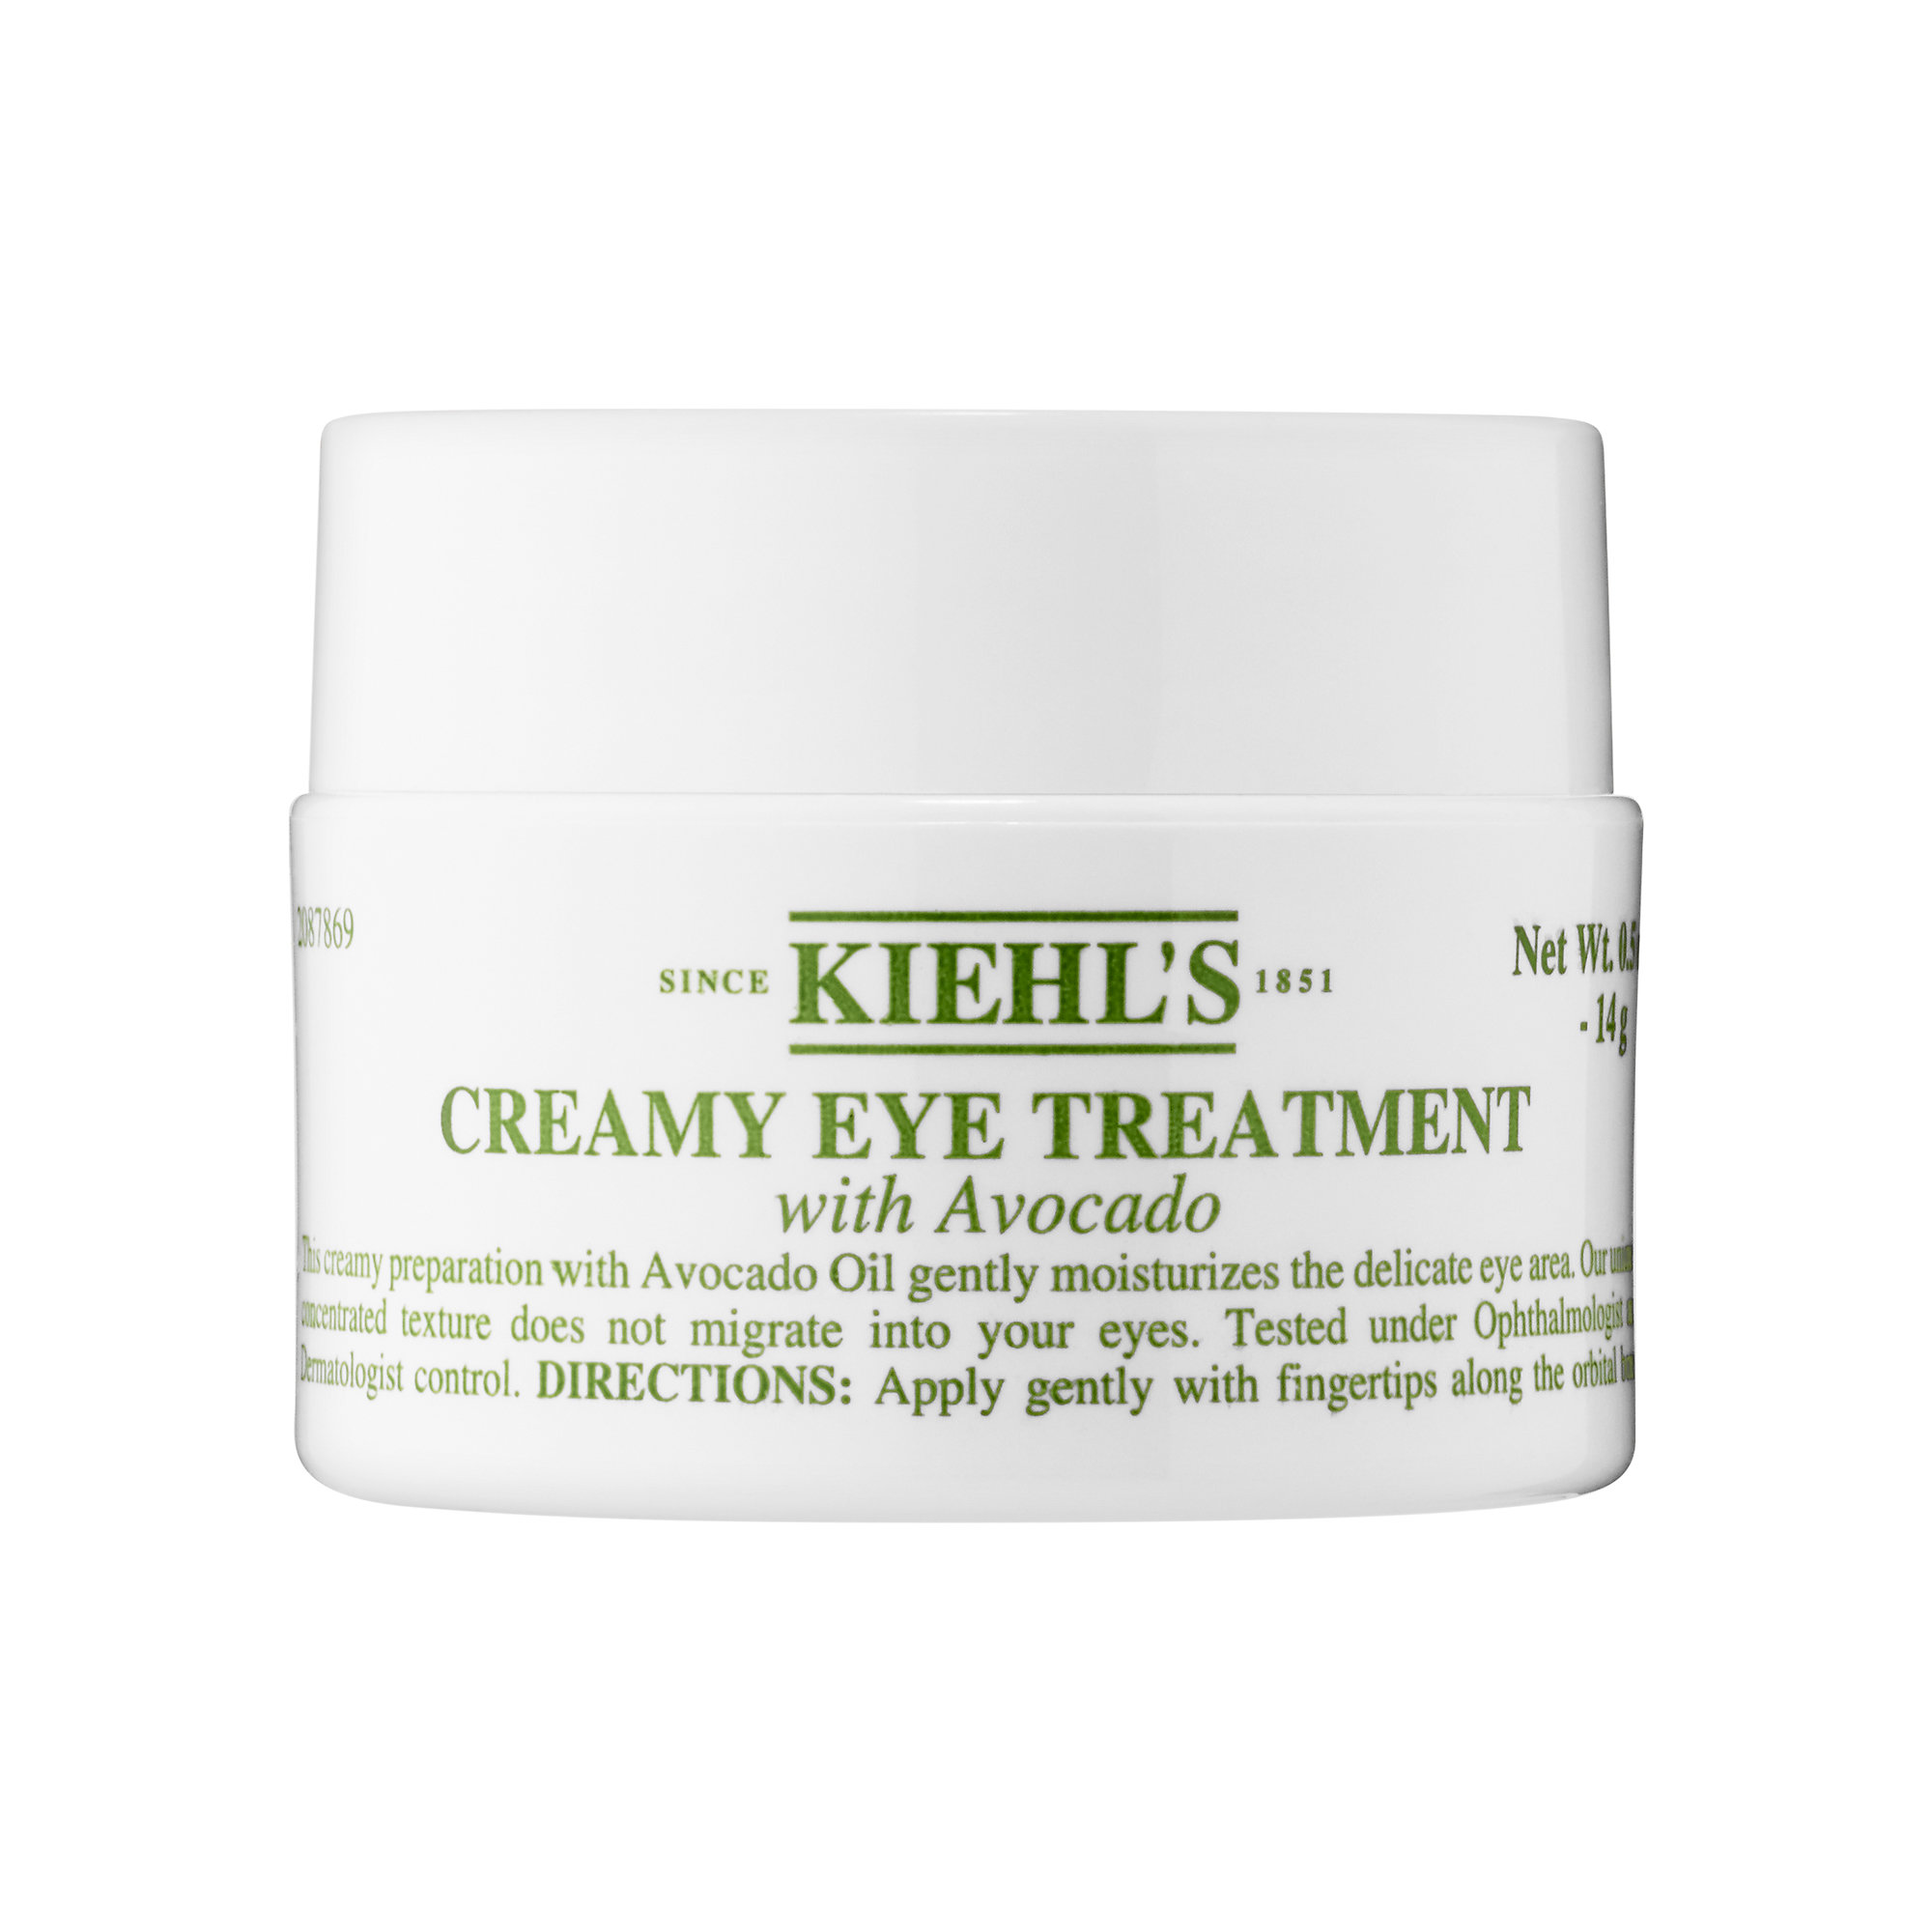 Kiehl's Creamy Eye Treatment with Avocado ($48)